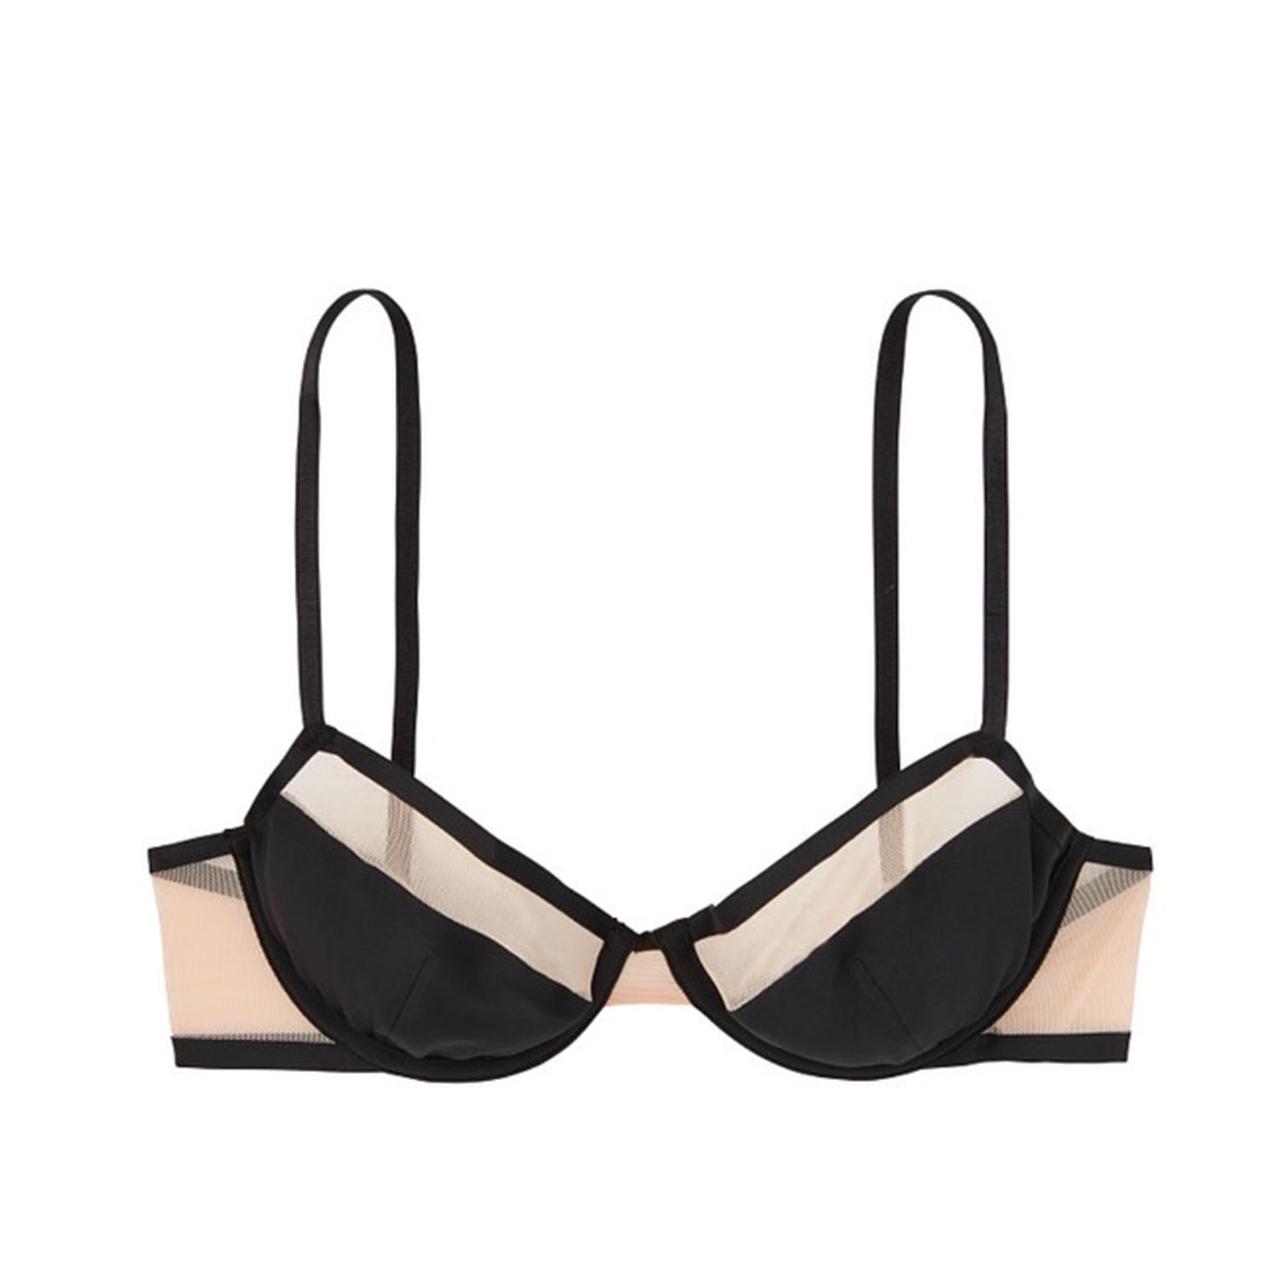 Victoria's Secret Victoria Secret white bra size 34DD - $10 - From